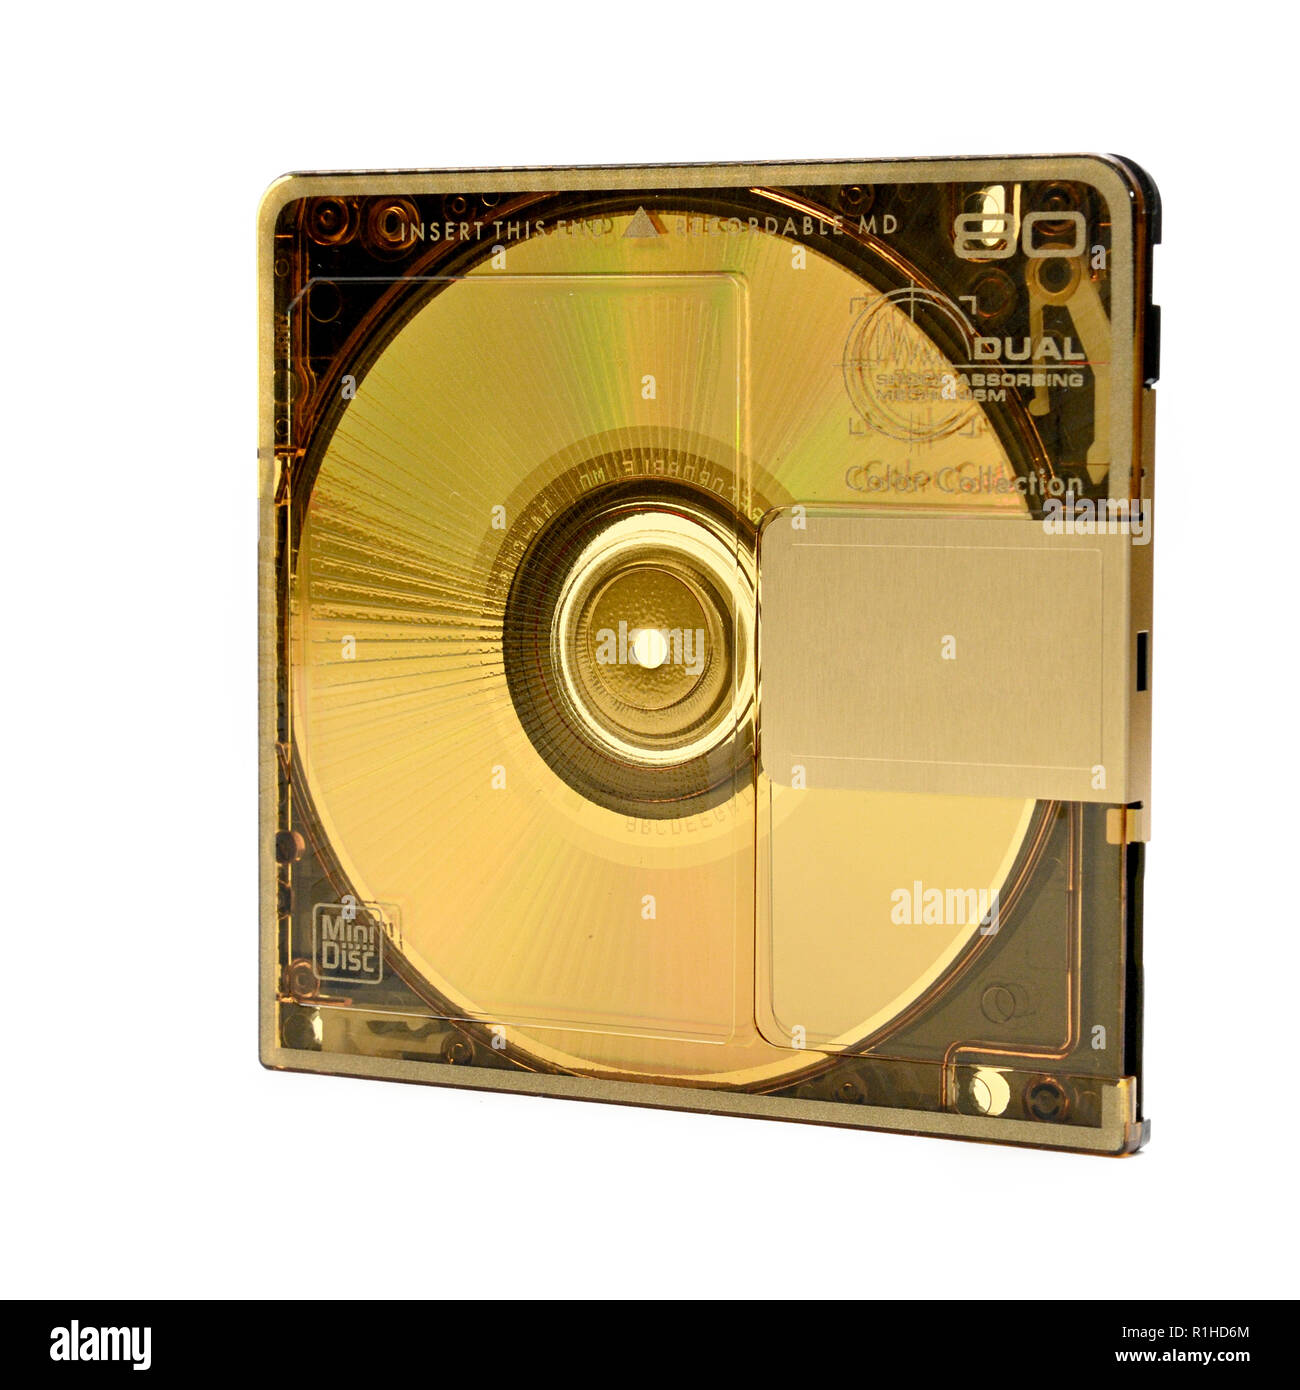 Mini Disc Rewritable Compact- MD pour l'enregistrement numérique publié  dans les années 90 sur un fond blanc Photo Stock - Alamy